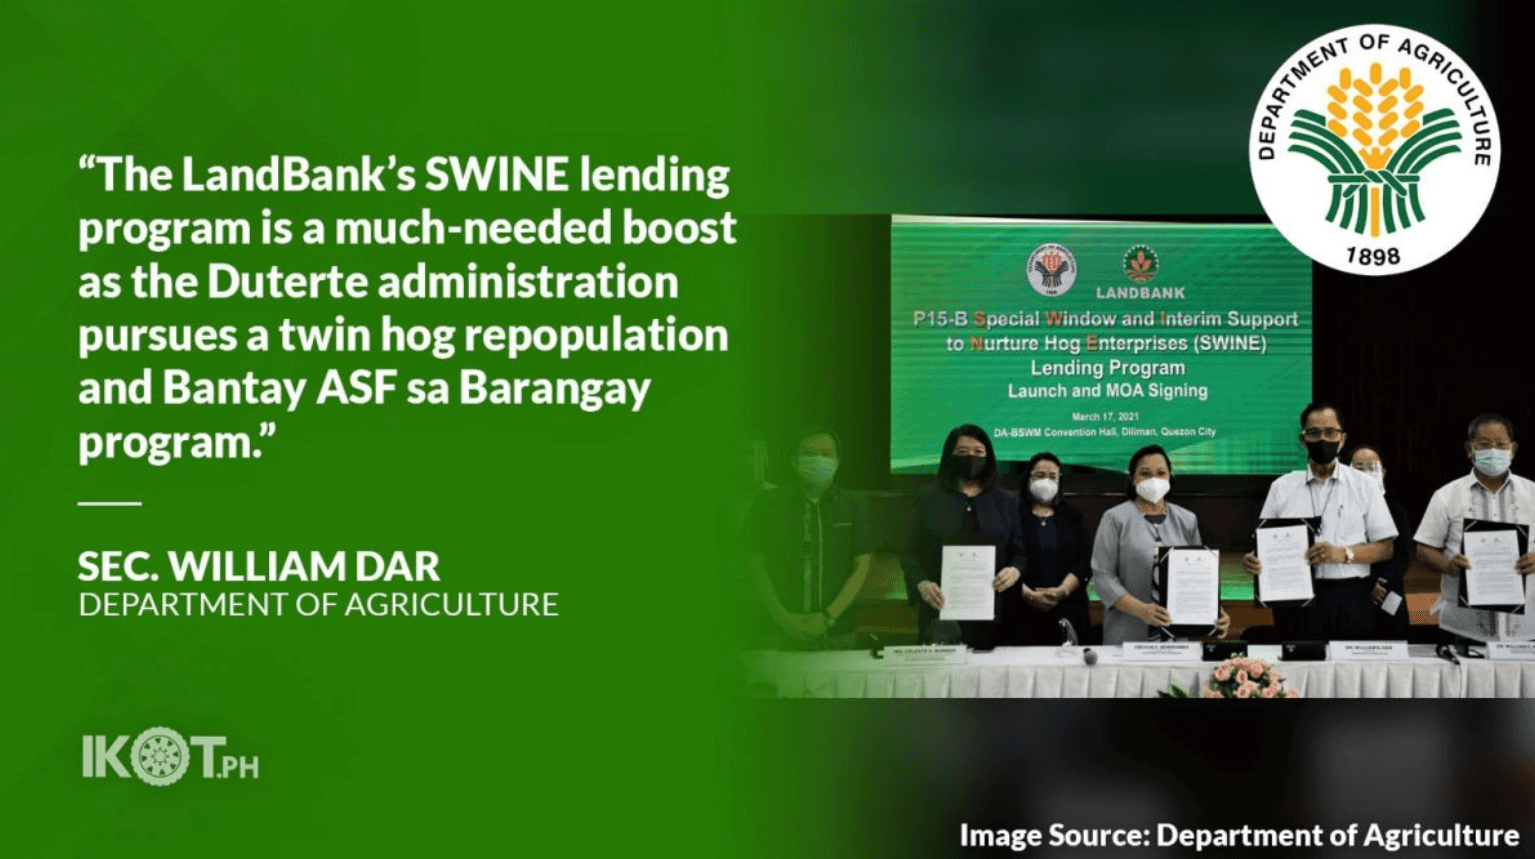 SWINE Lending Program from Landbank